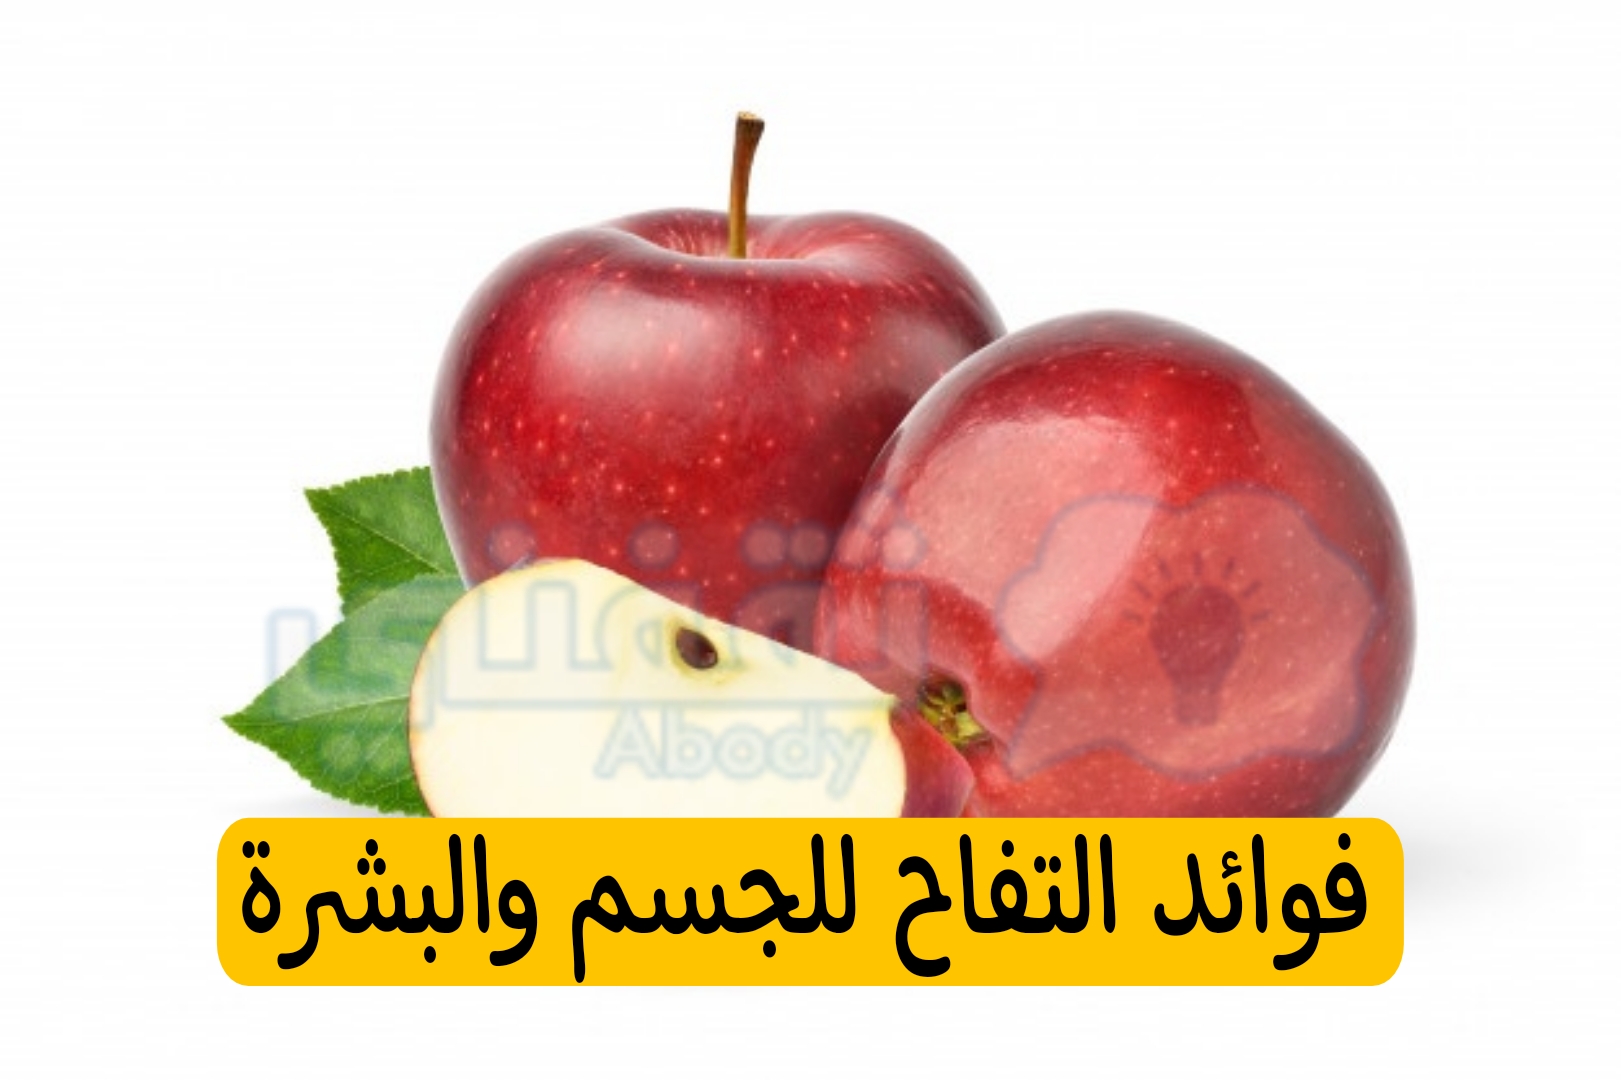 فوائد اكل التفاح لجمال الوجه والبشرة واهم فوائد التفاح للجسم